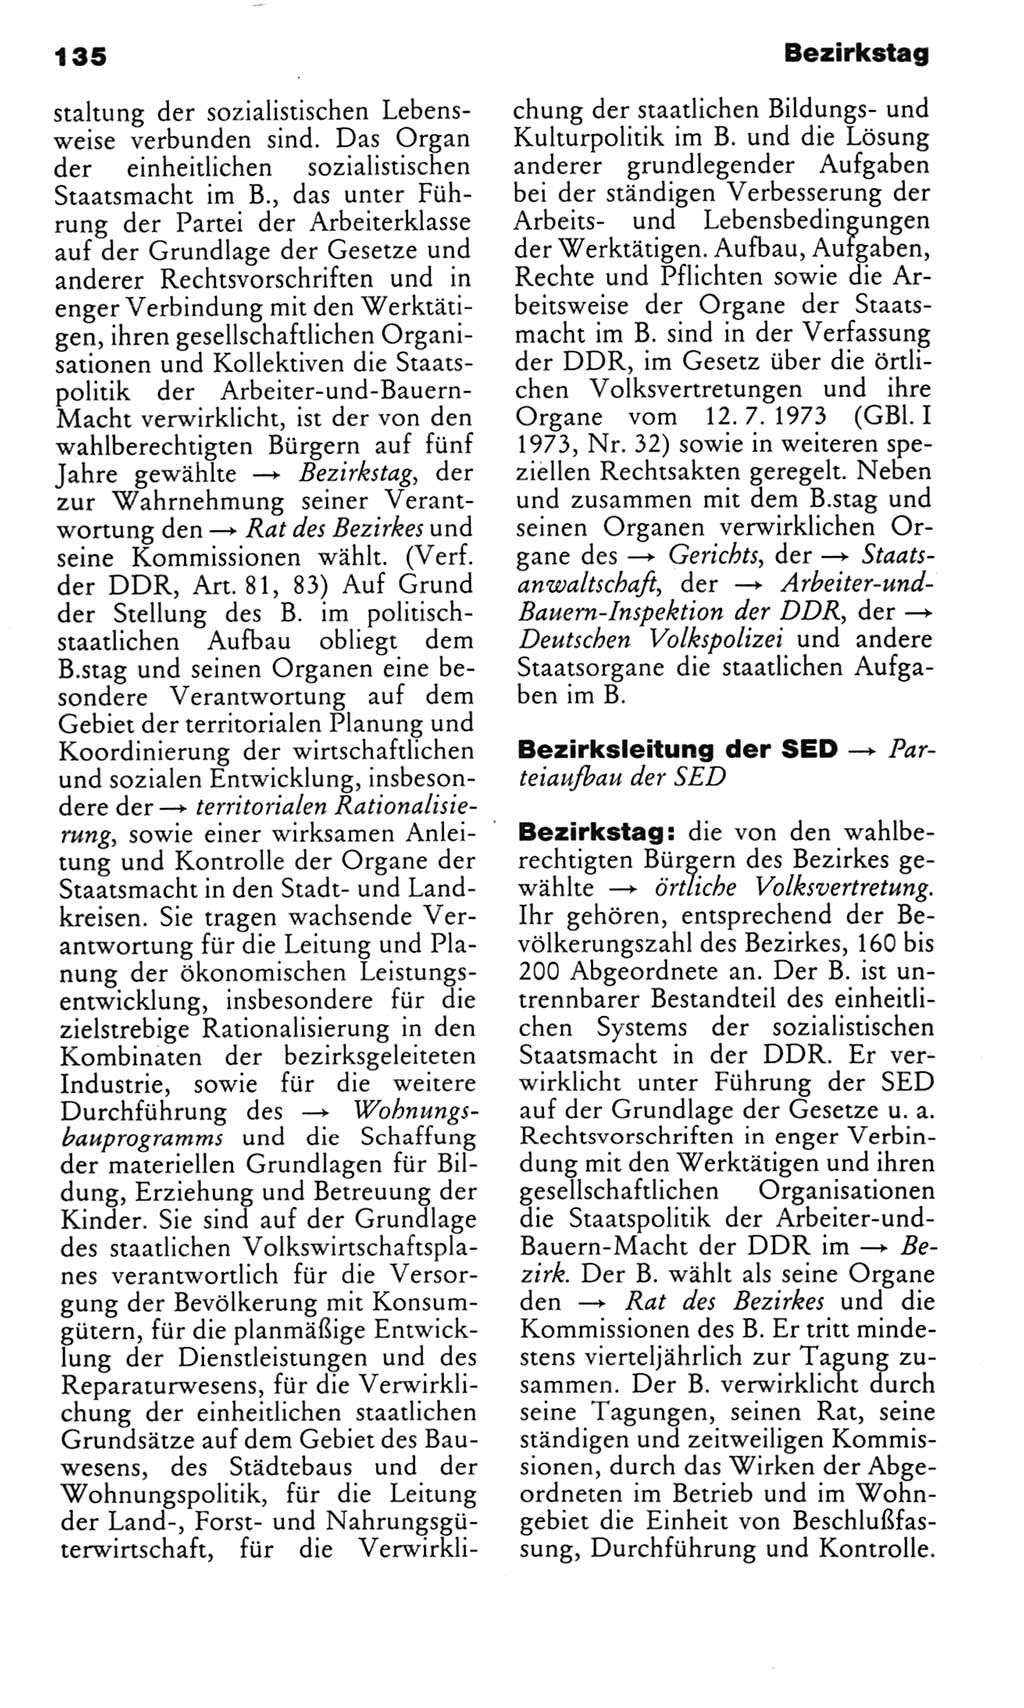 Kleines politisches Wörterbuch [Deutsche Demokratische Republik (DDR)] 1983, Seite 135 (Kl. pol. Wb. DDR 1983, S. 135)